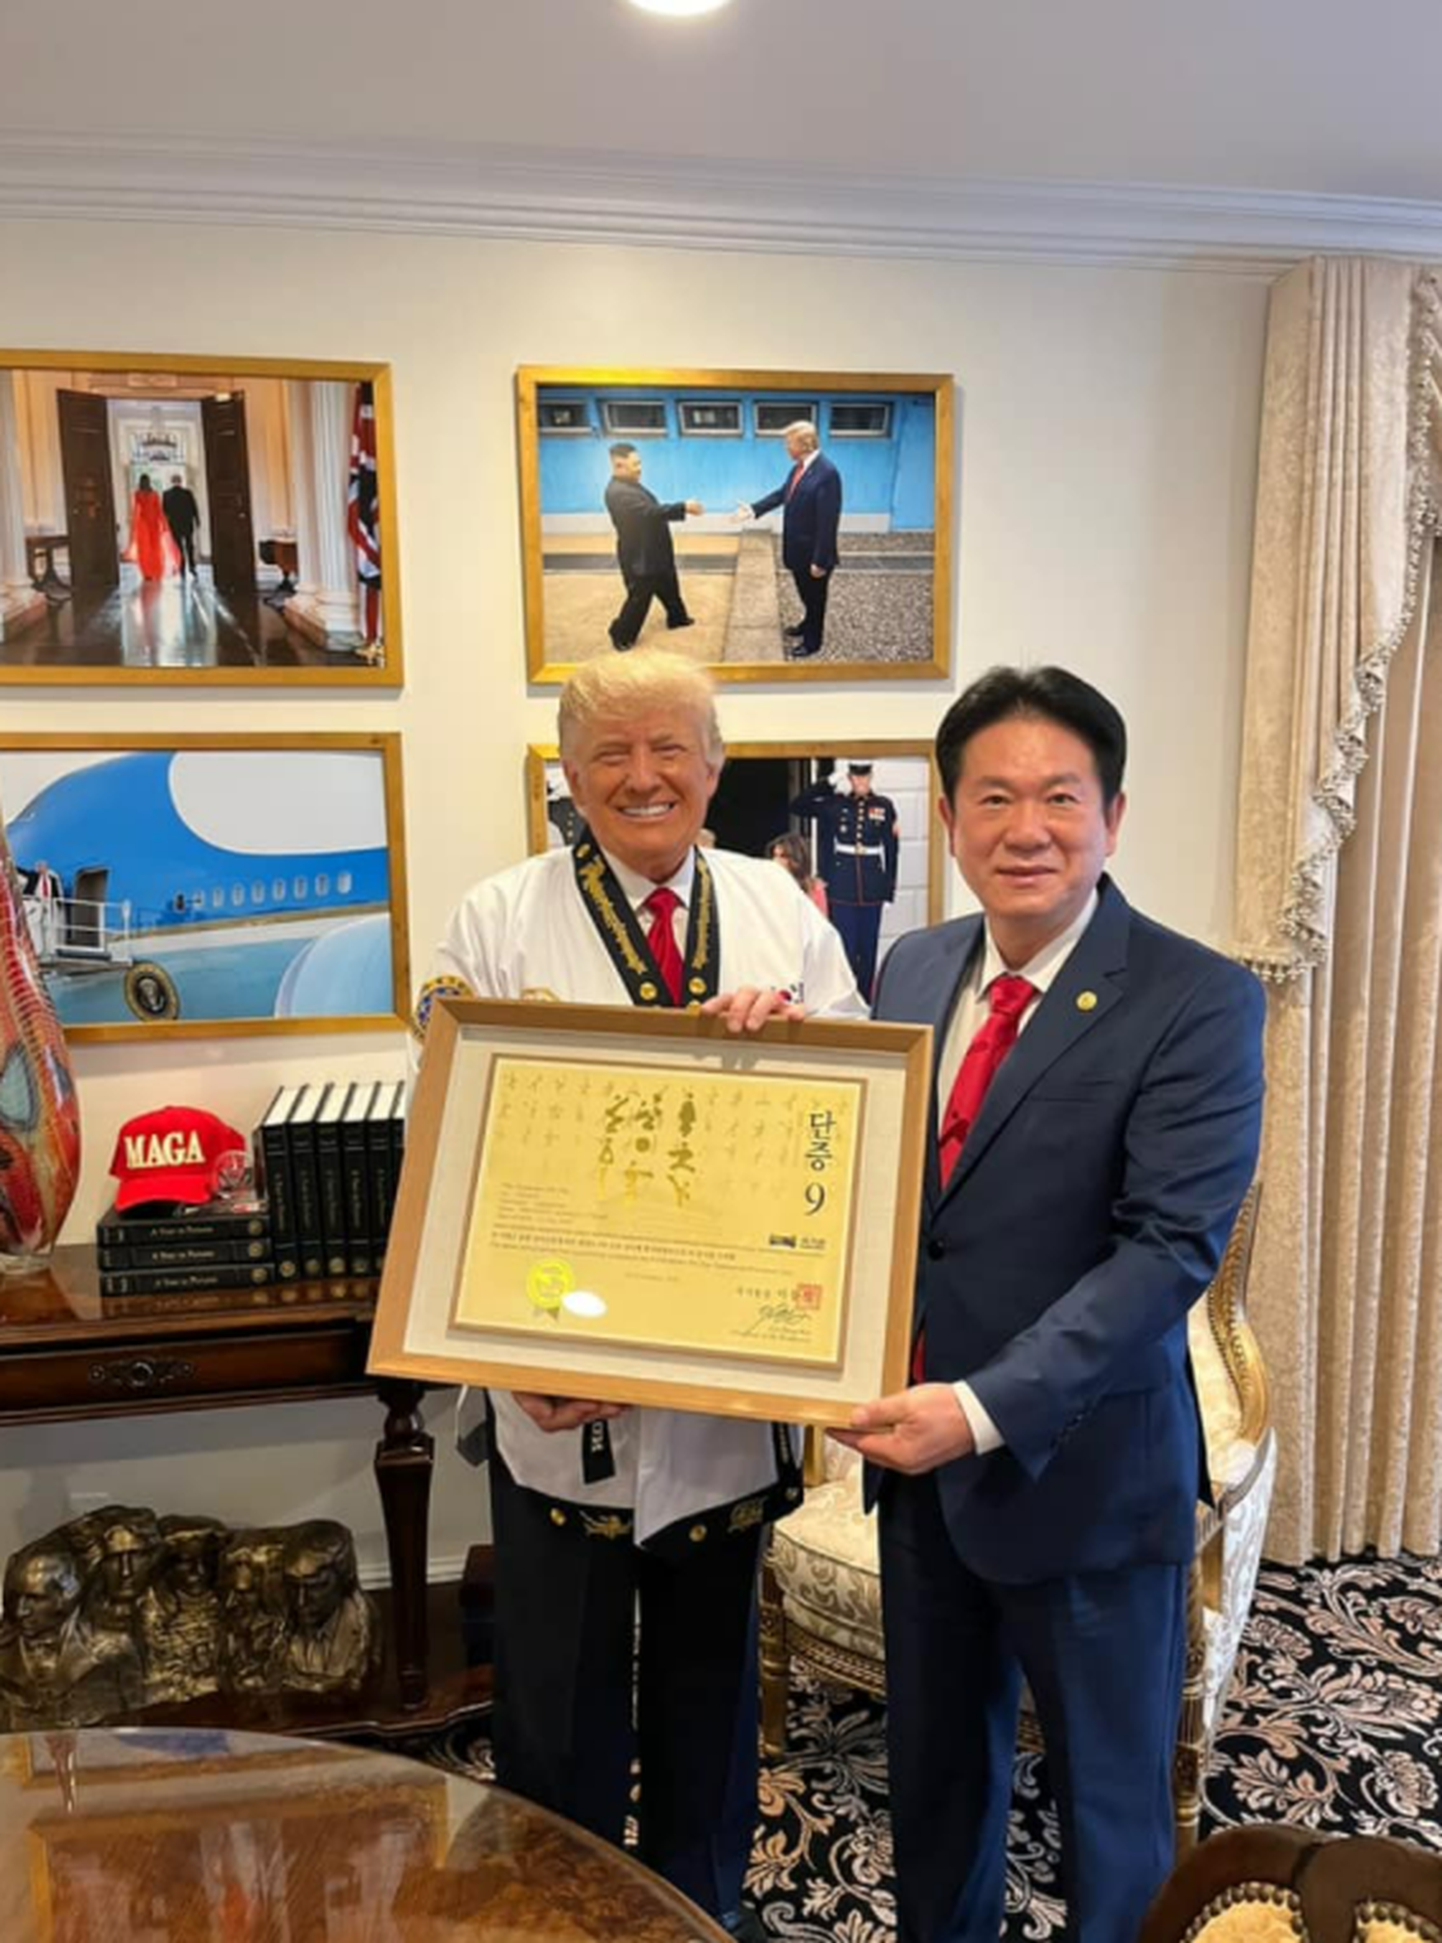 Kukkiwoni president Lee Dong-sup andmas üle Donald Trumpile musta vöö sertifikaadi.